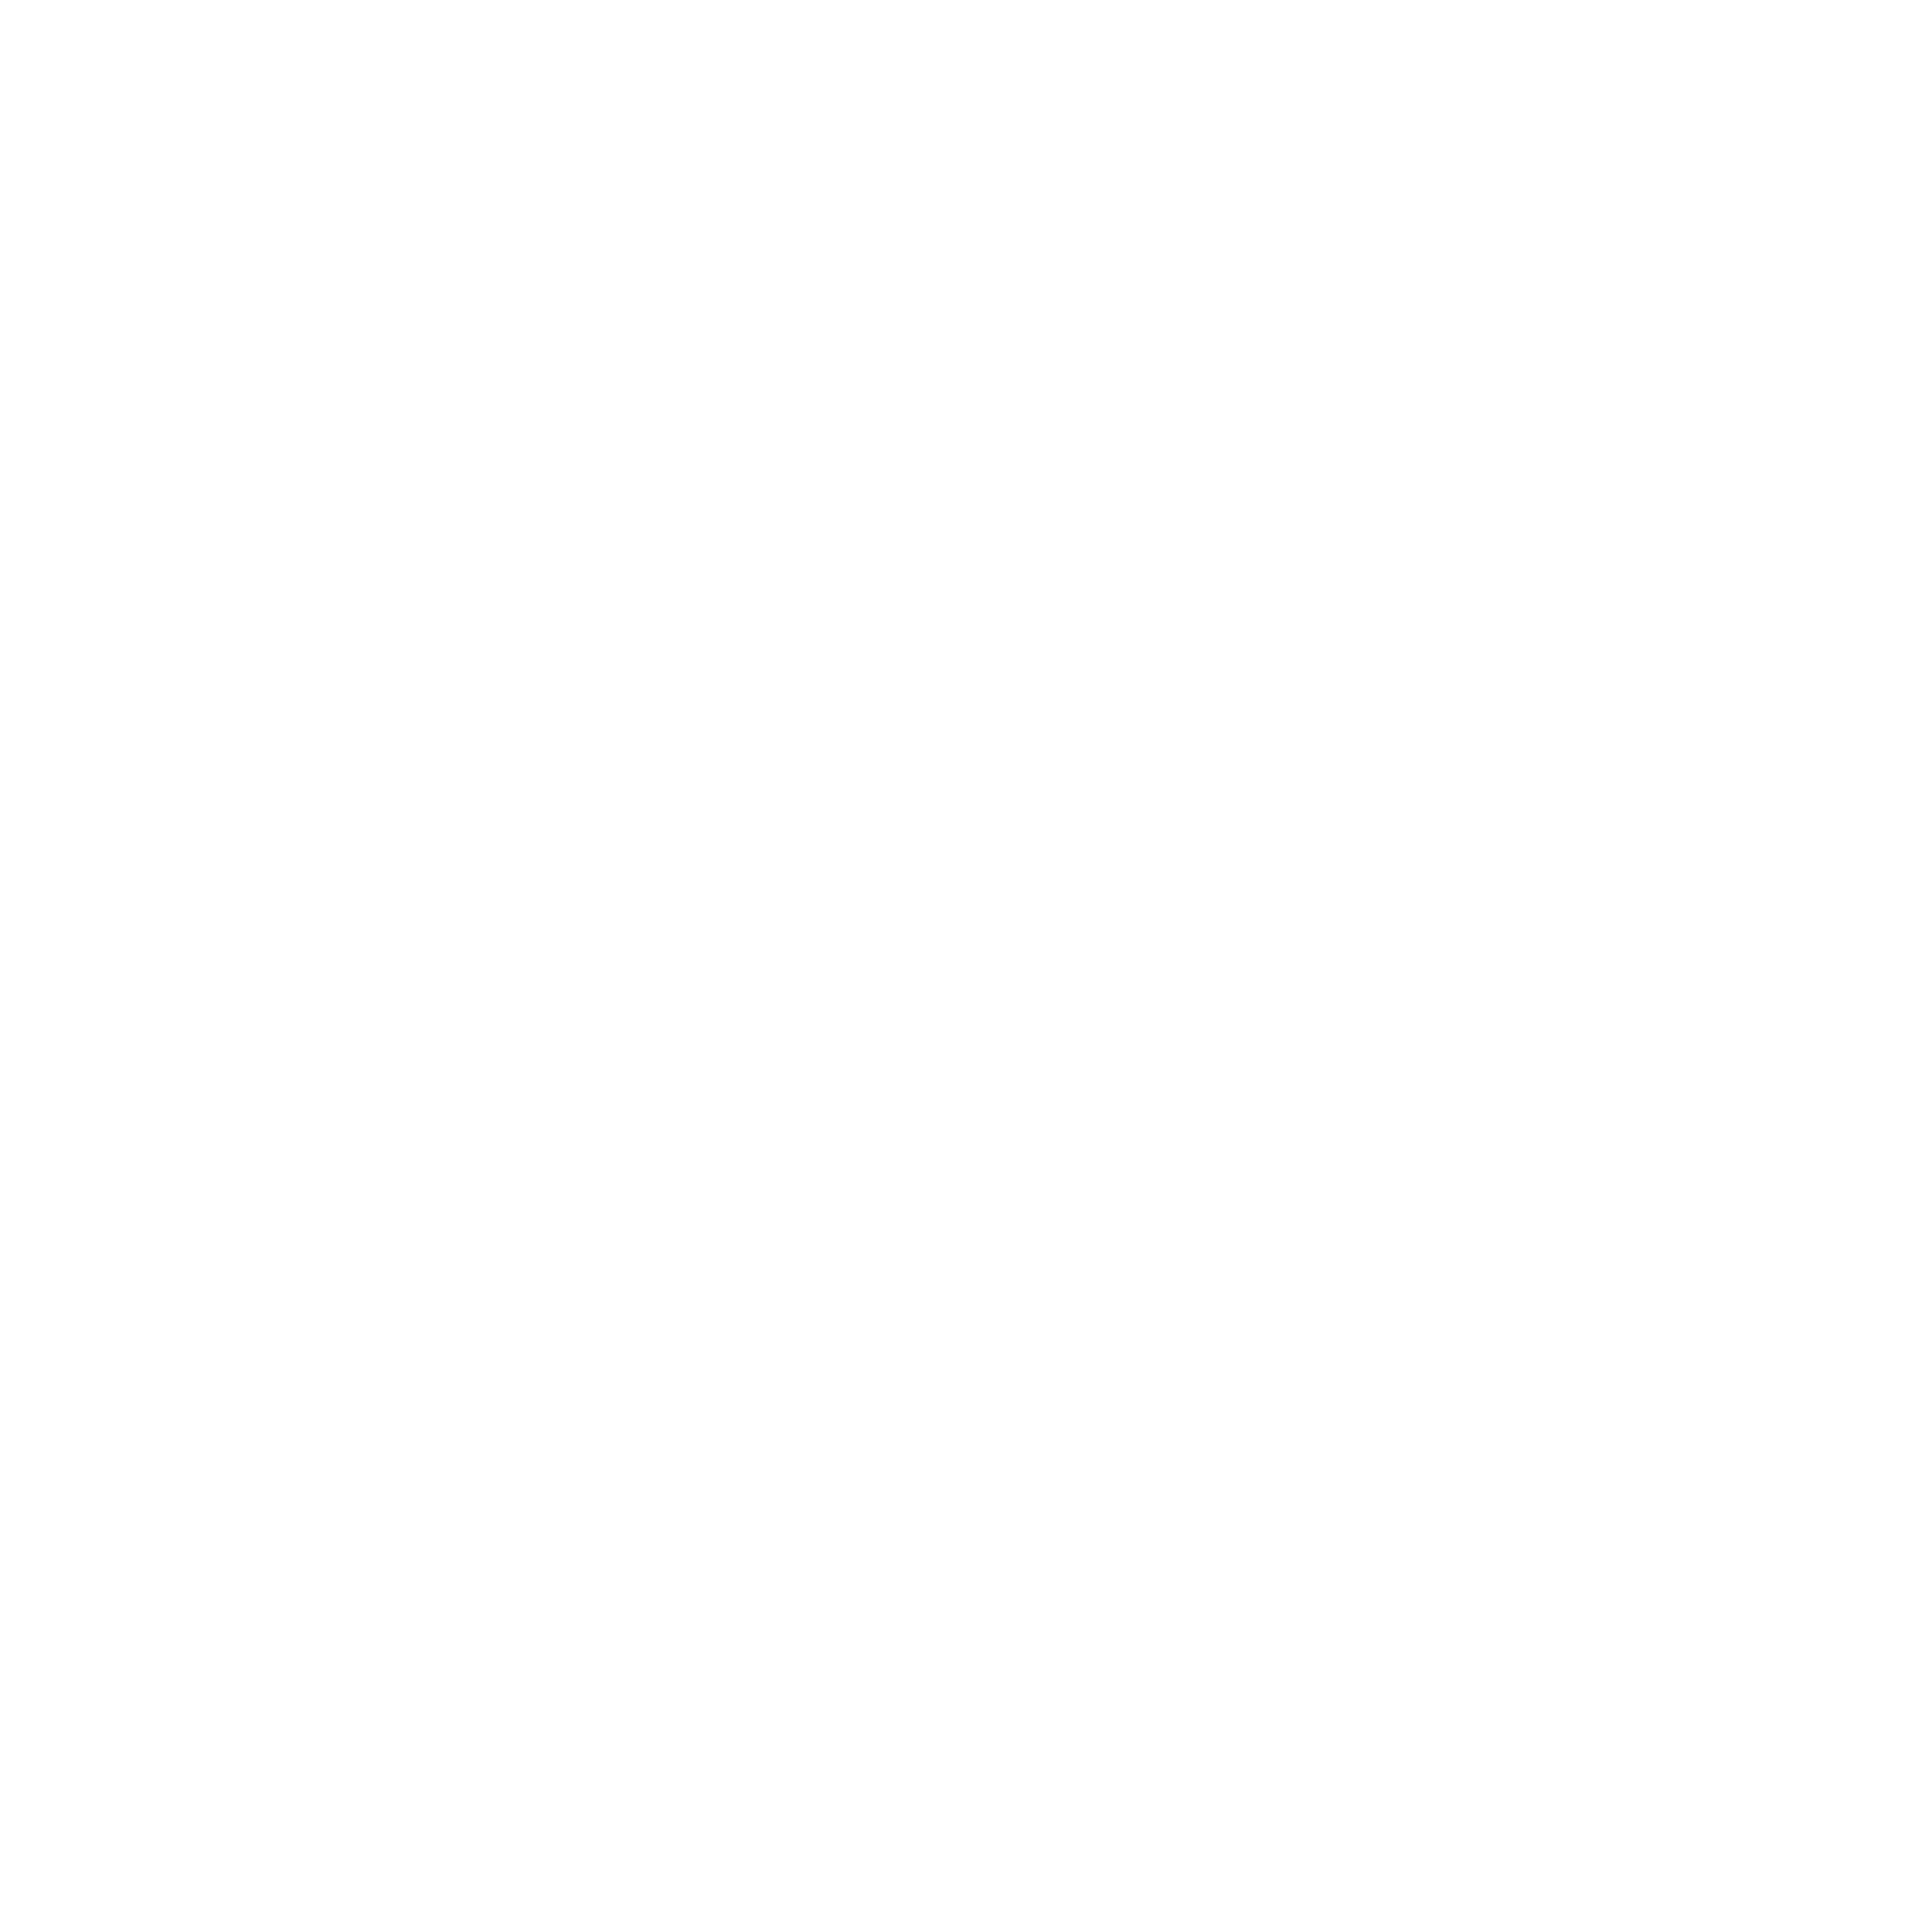 La Metro FM